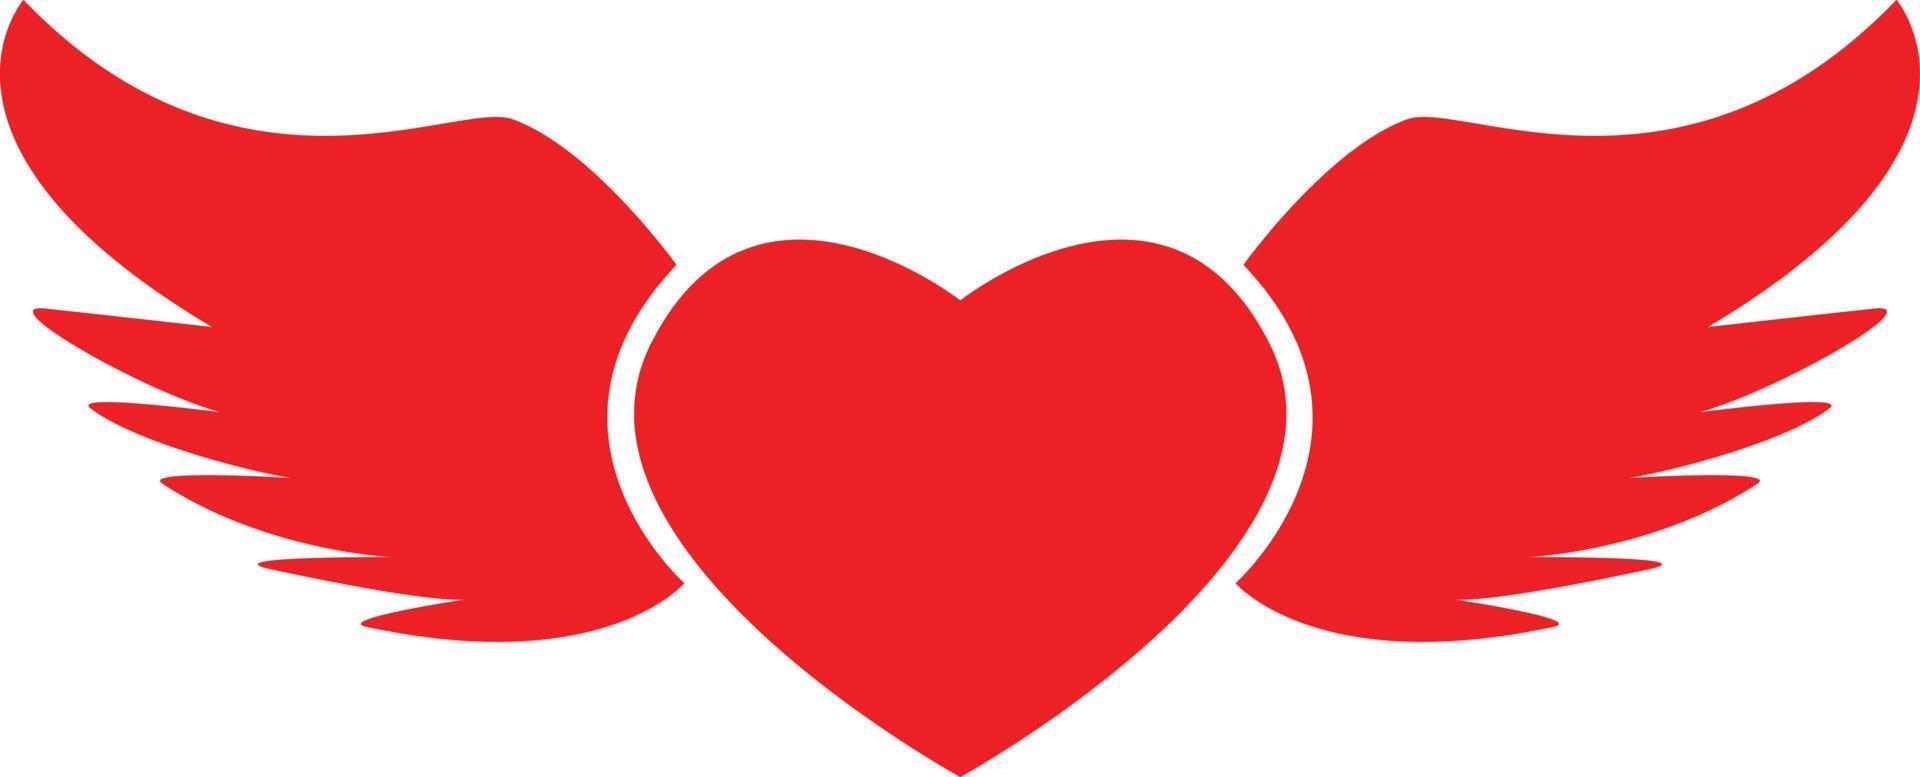 hart met vleugels pictogram op witte achtergrond. vlakke stijl. valentijnskaarten en liefdessymbool. Valentijns teken. vector